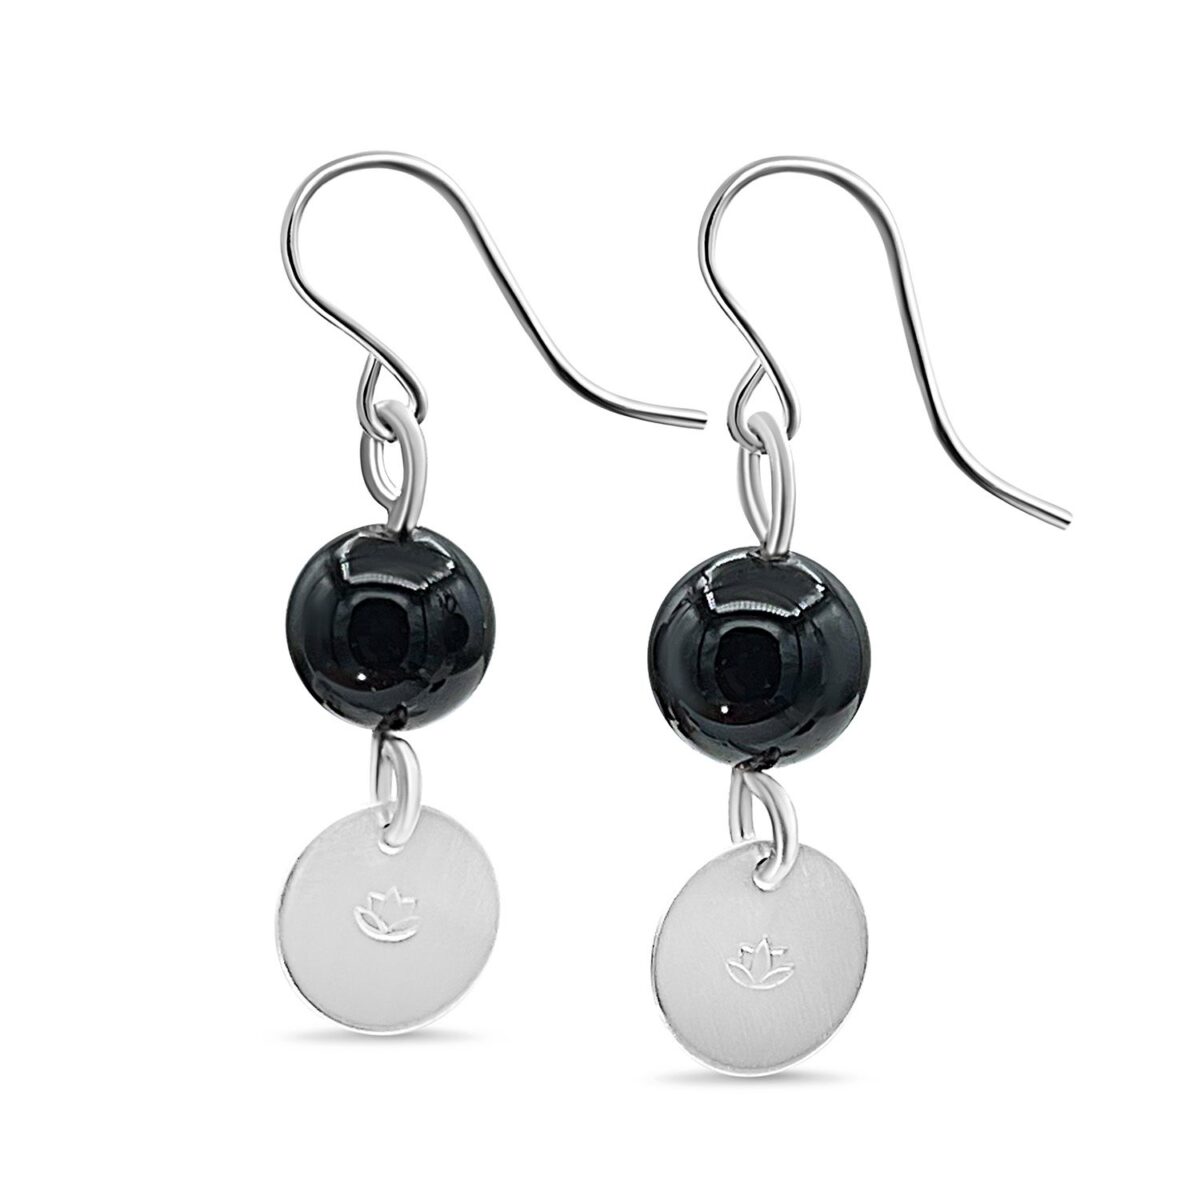 En Mi Jewelry - black onyx drop earrings. Sterling silver earrings for women.